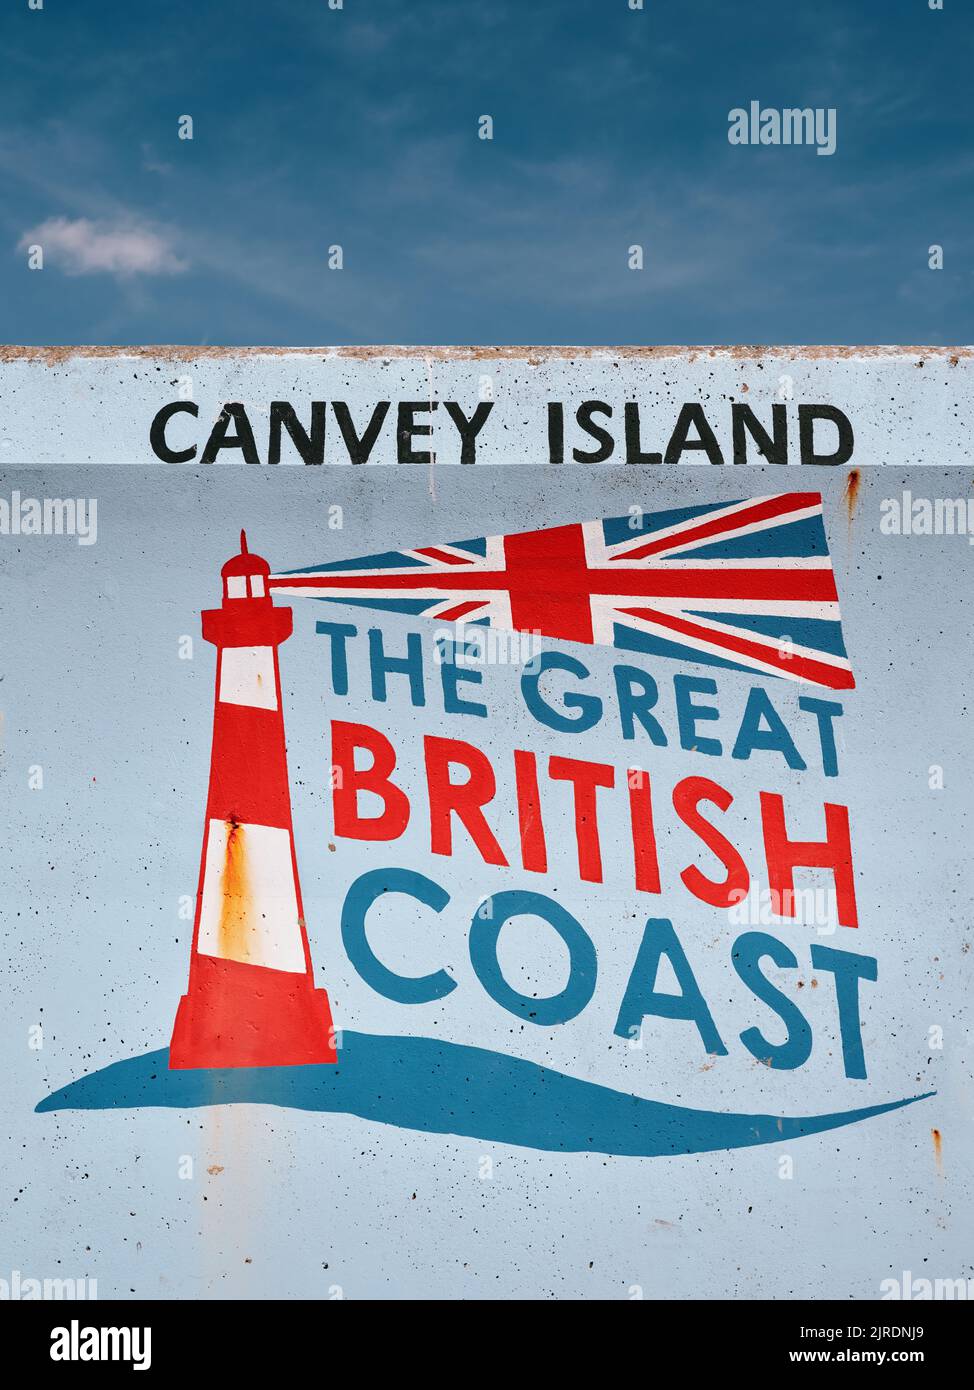 La Great British Coast a peint le phare mural de la digue Canvey Island, l'estuaire de la Tamise, Essex, Angleterre, Royaume-Uni Banque D'Images